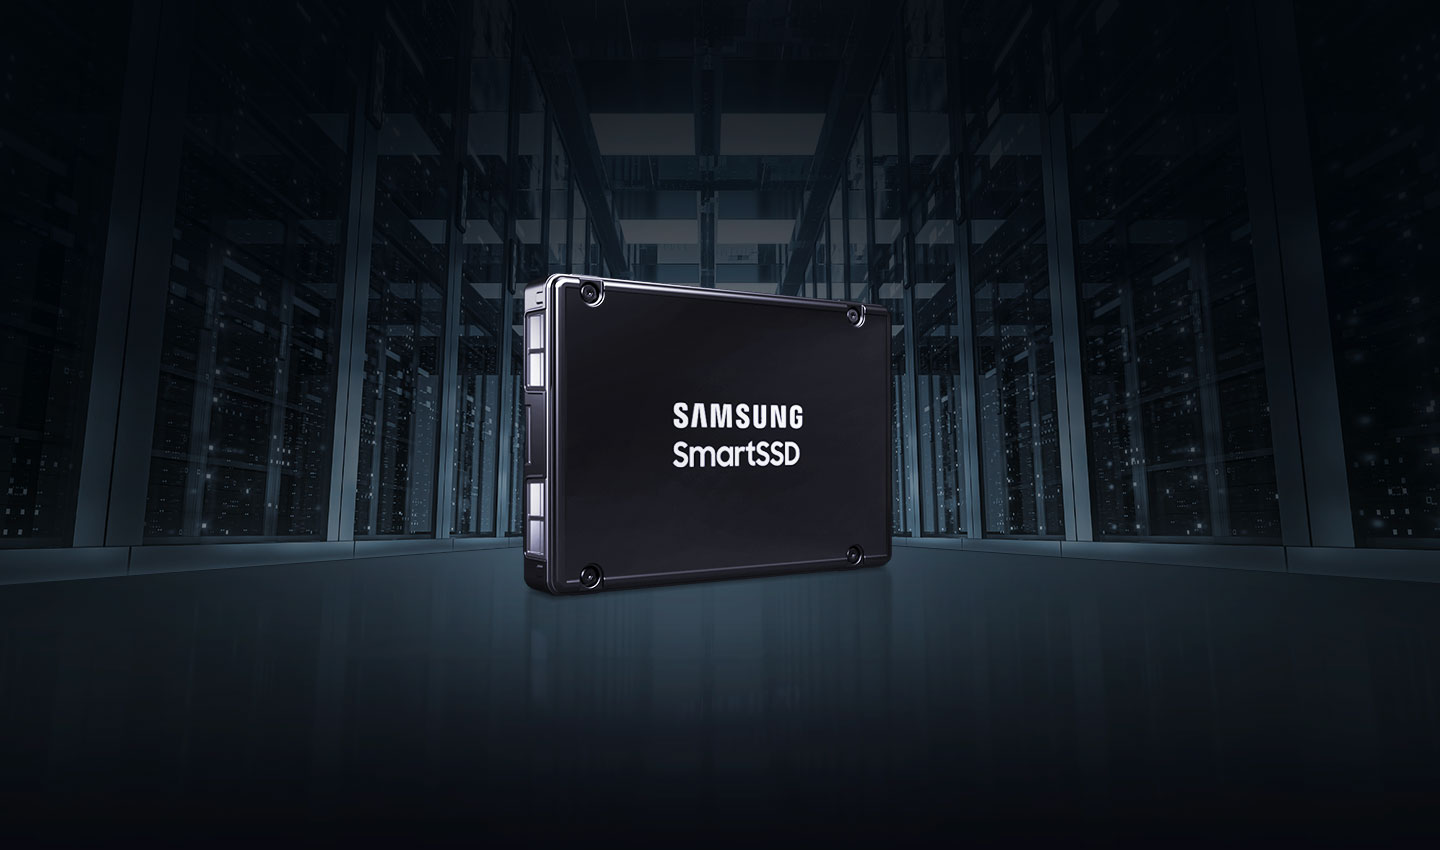 Samsung anuncia o SmartSSD, que reduz o uso de CPU em 97%